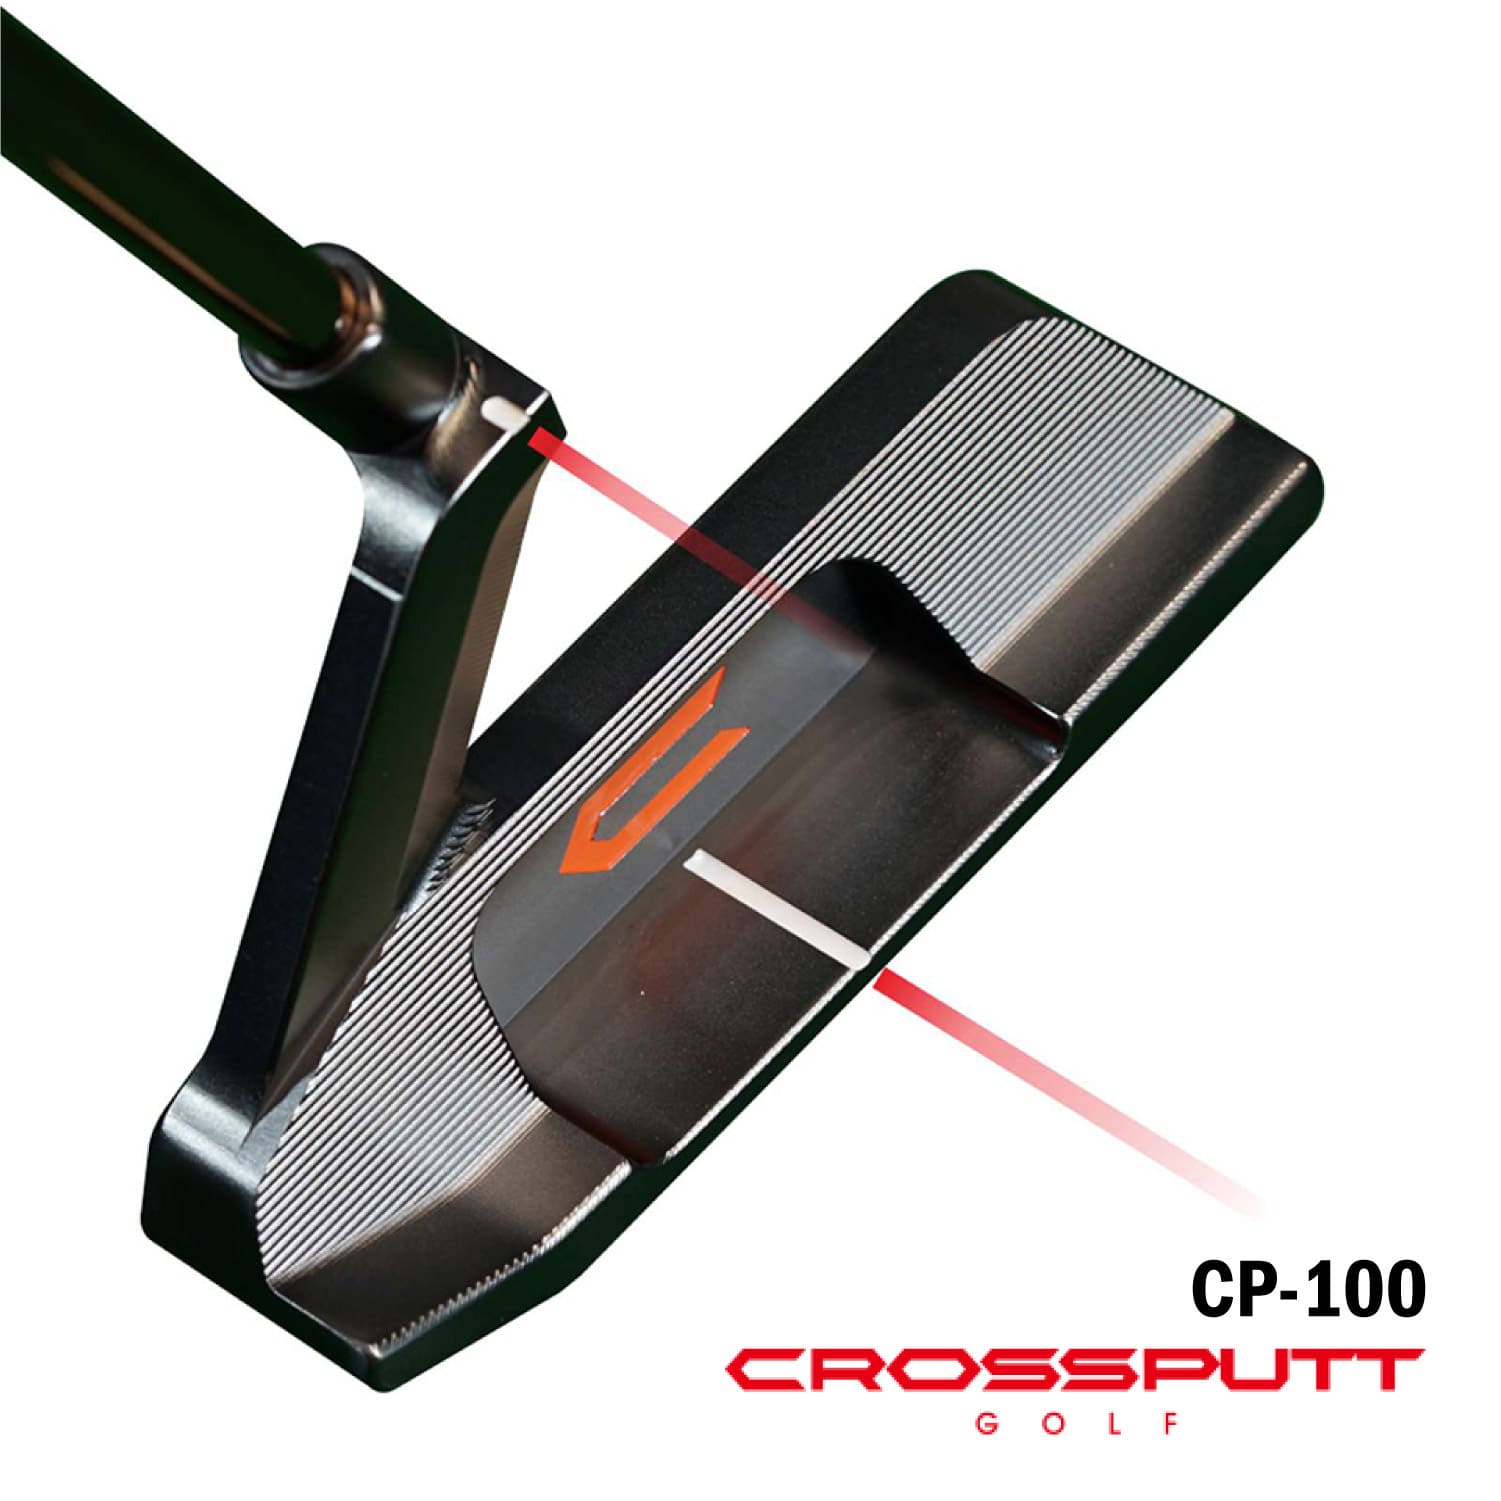 CROSSPUTT GOLF CP-100